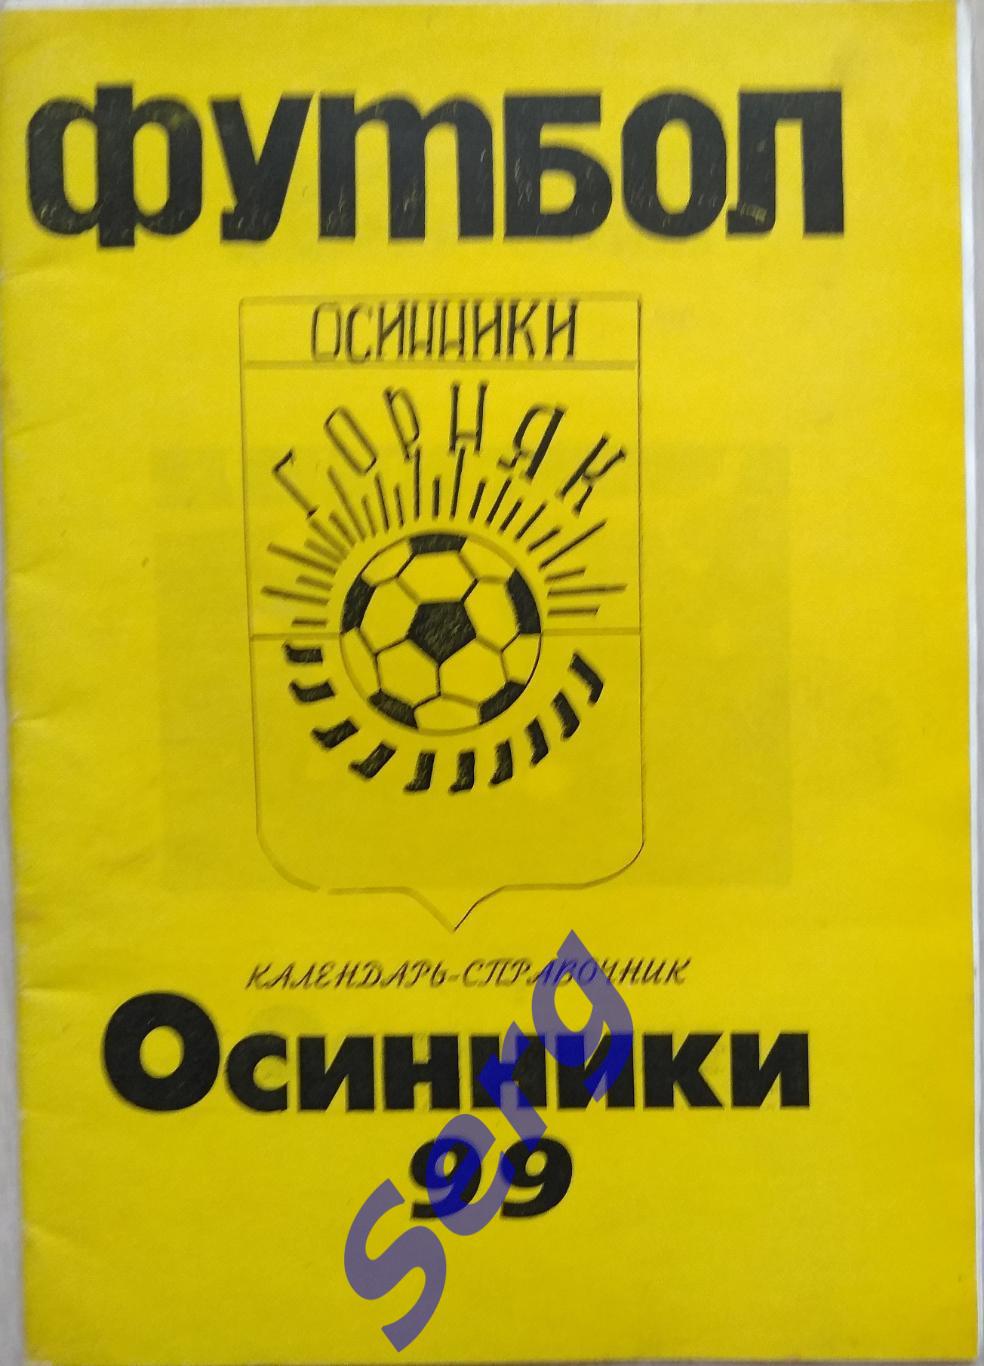 Календарь-справочник Осинники 1999 год